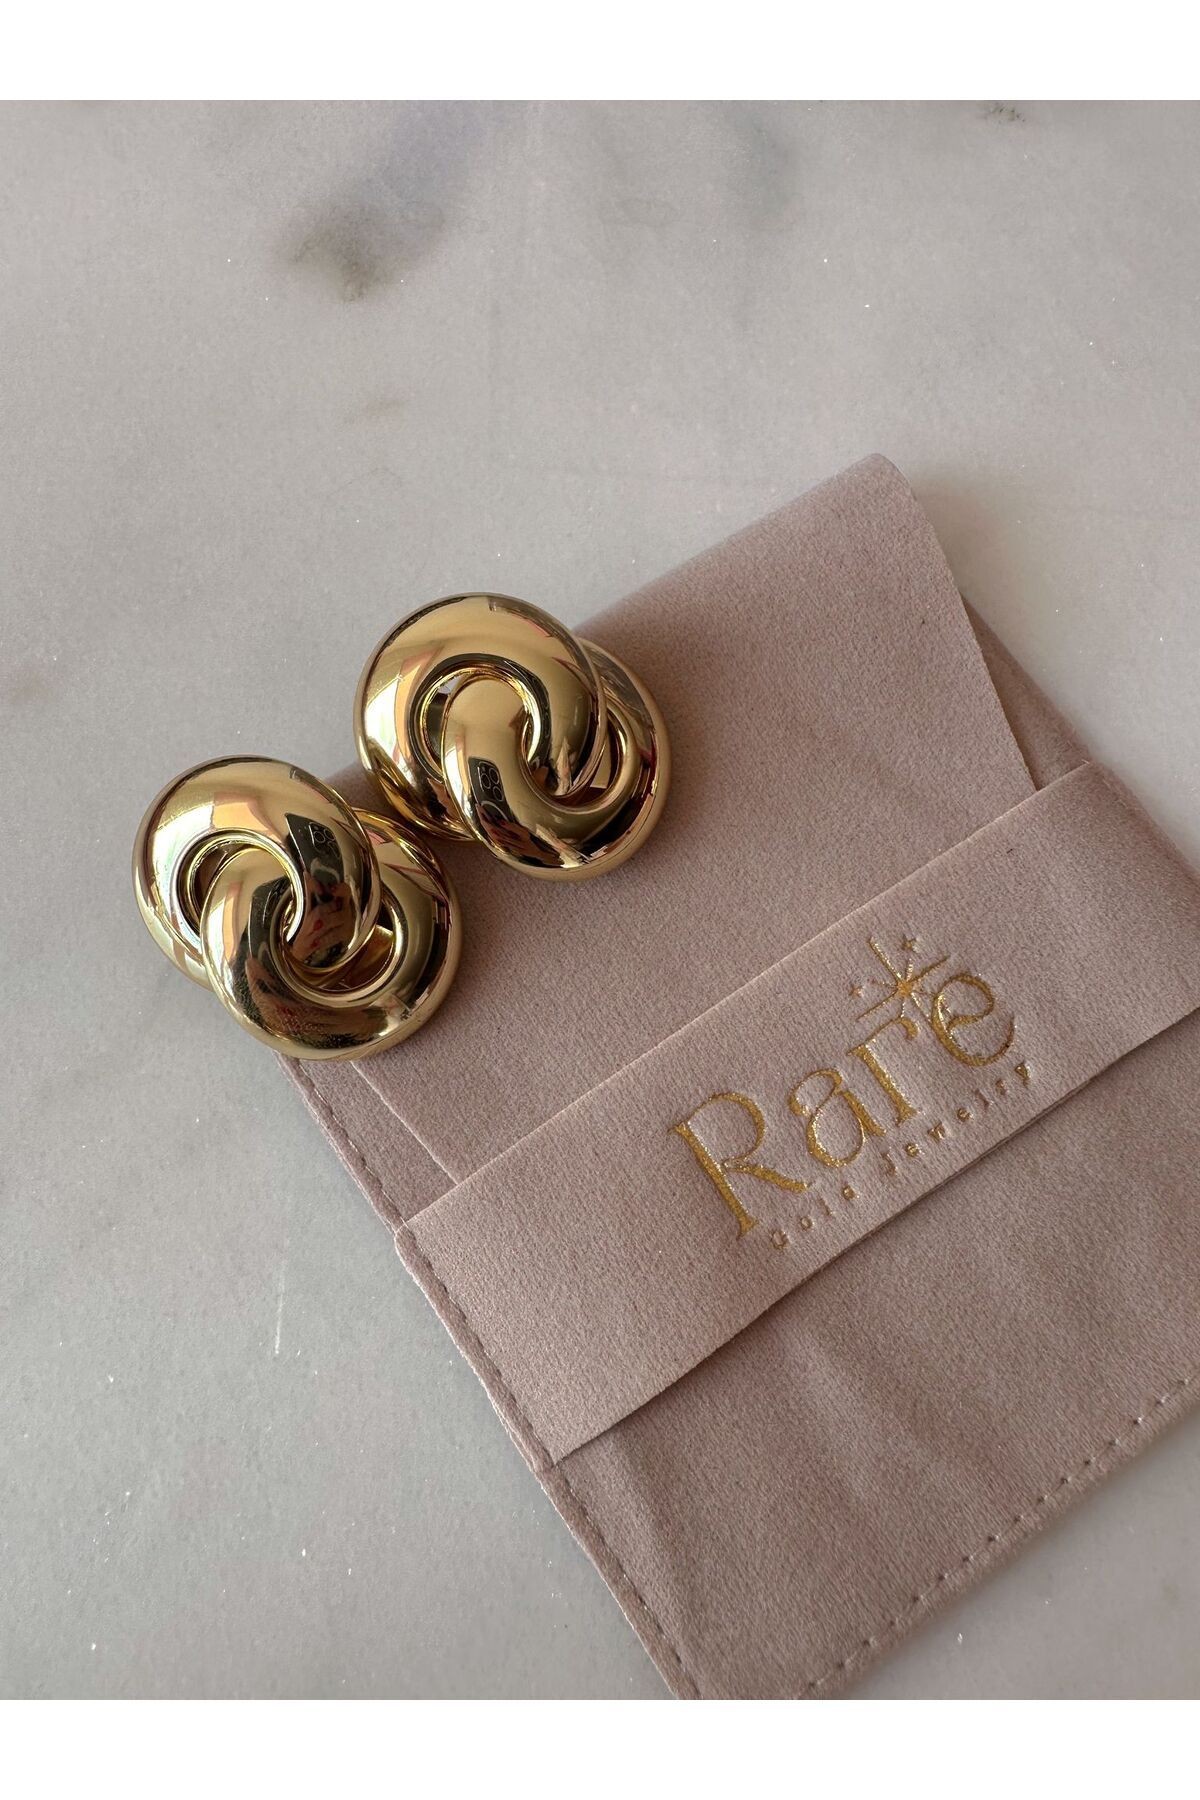 Double Ring Design Earring Pinterest